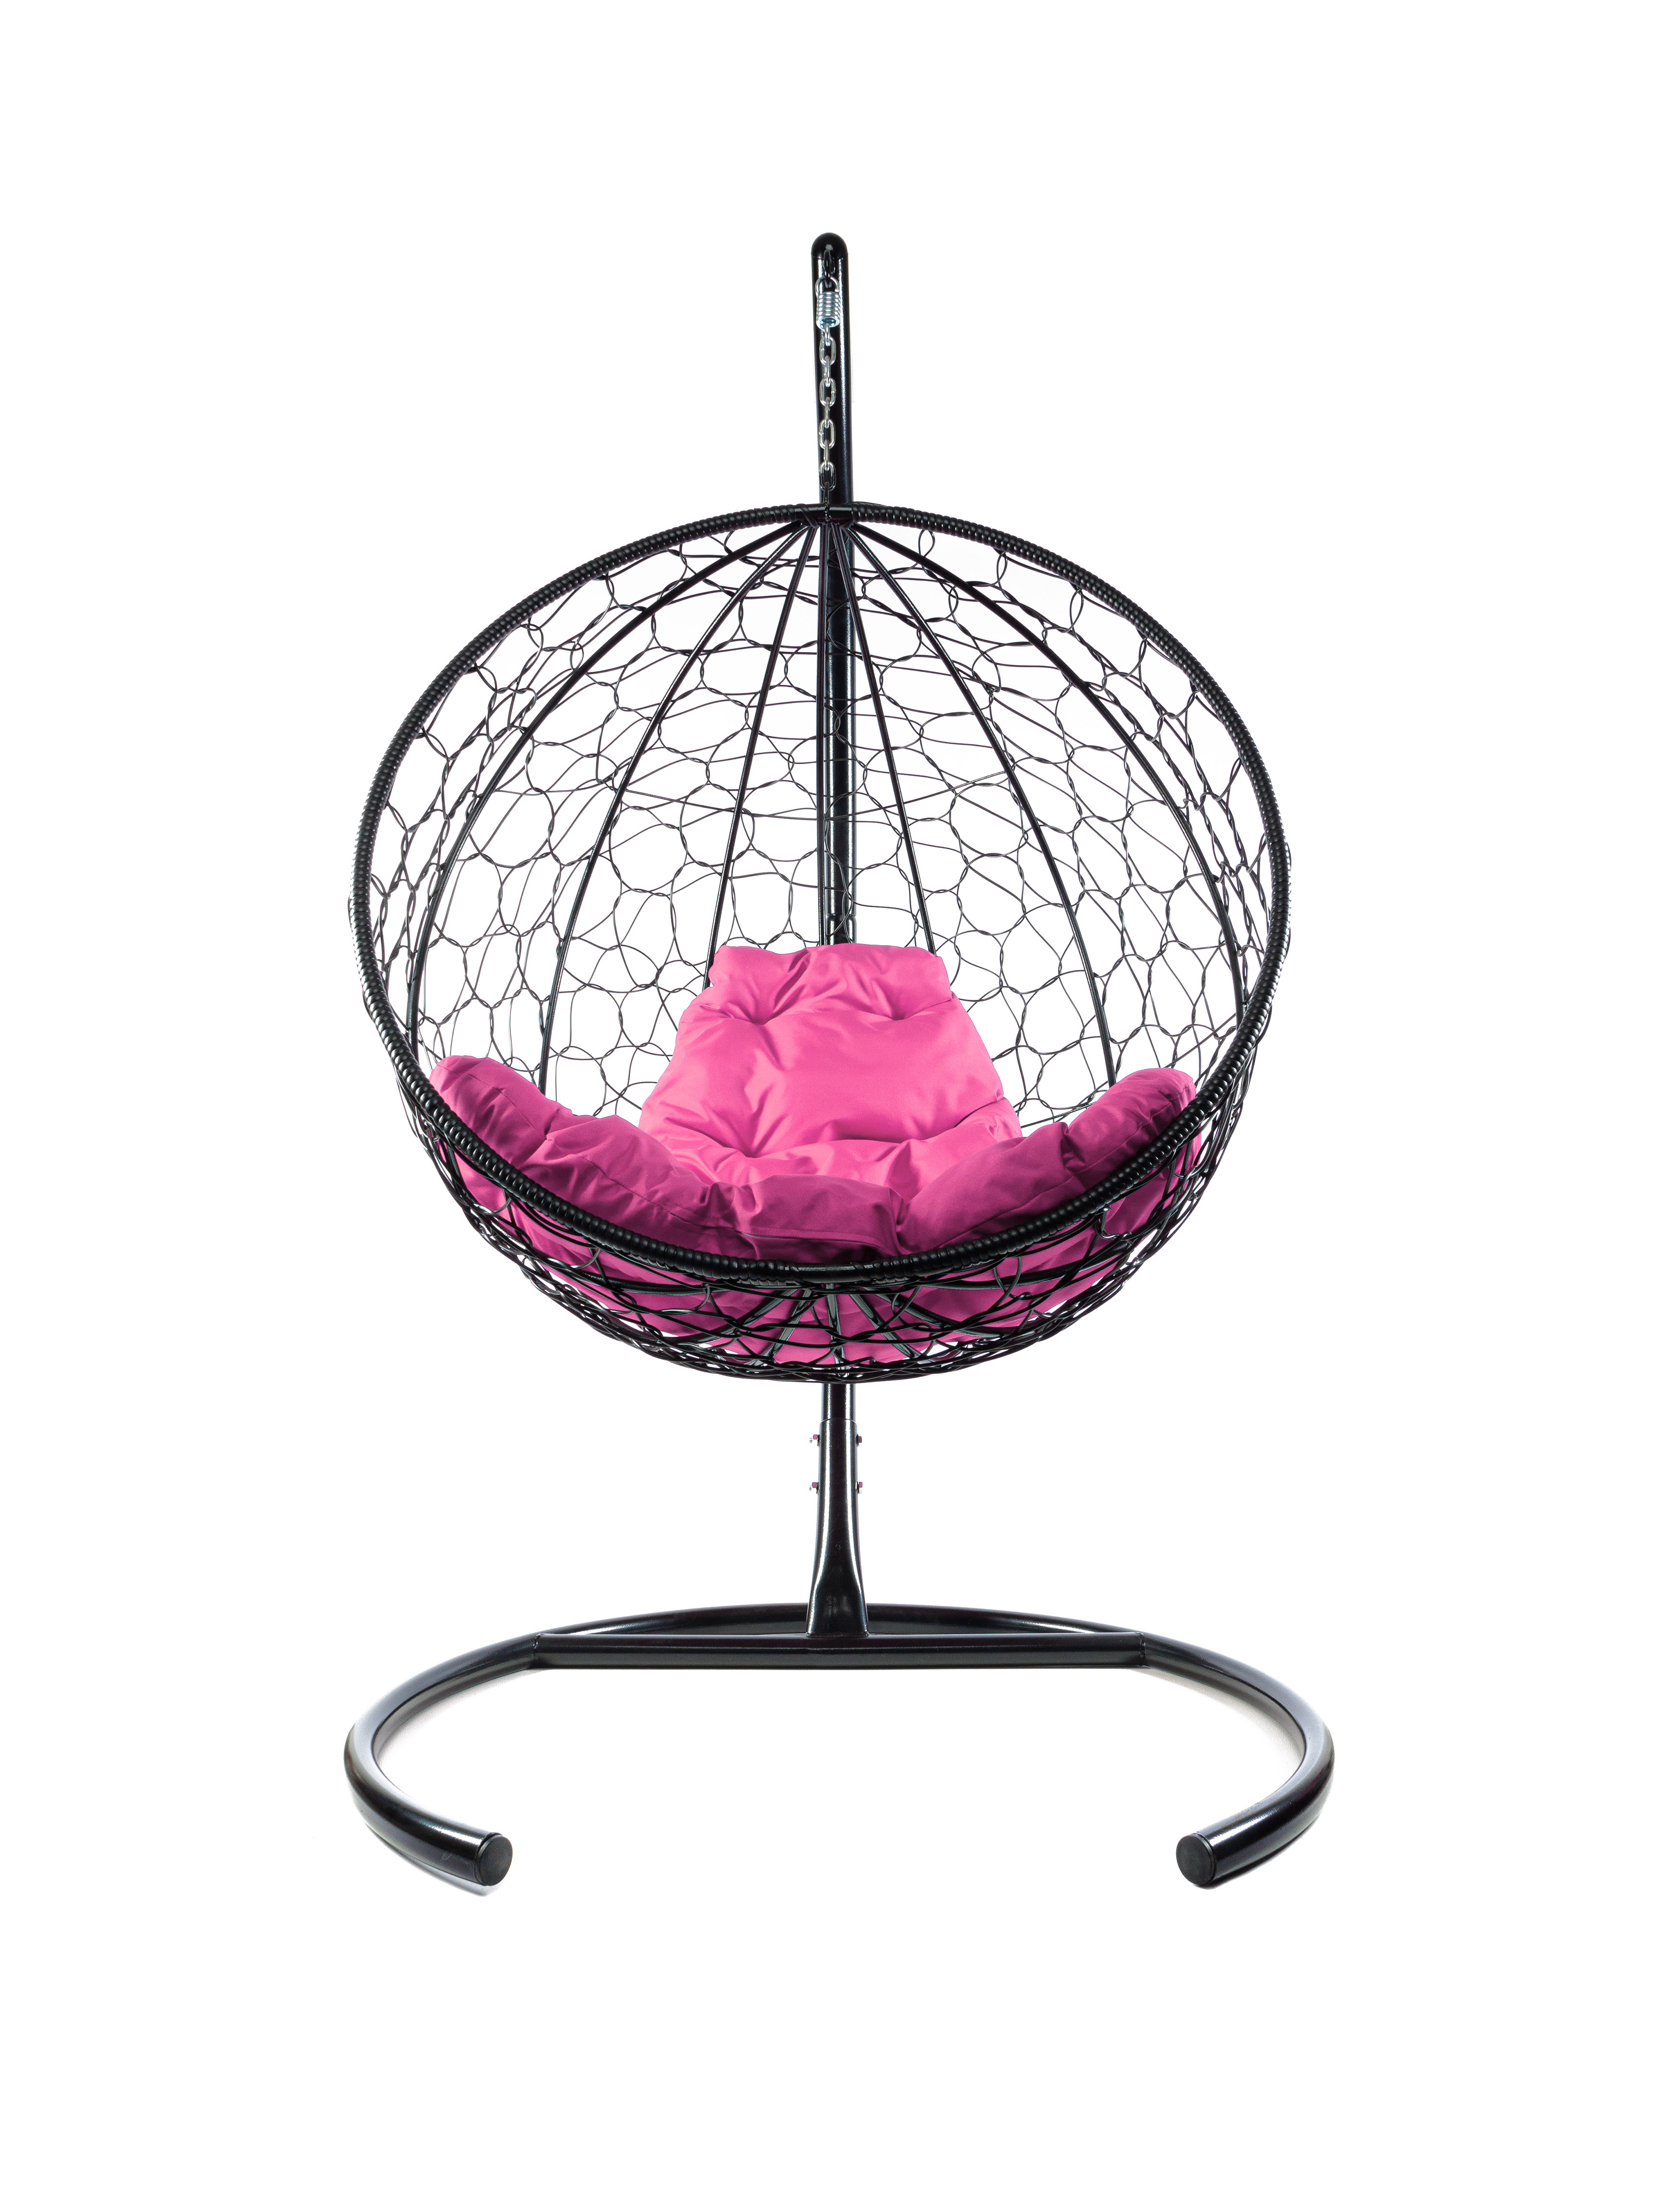 фото Подвесное кресло черный m-group круглый ротанг 11050408 розовая подушка